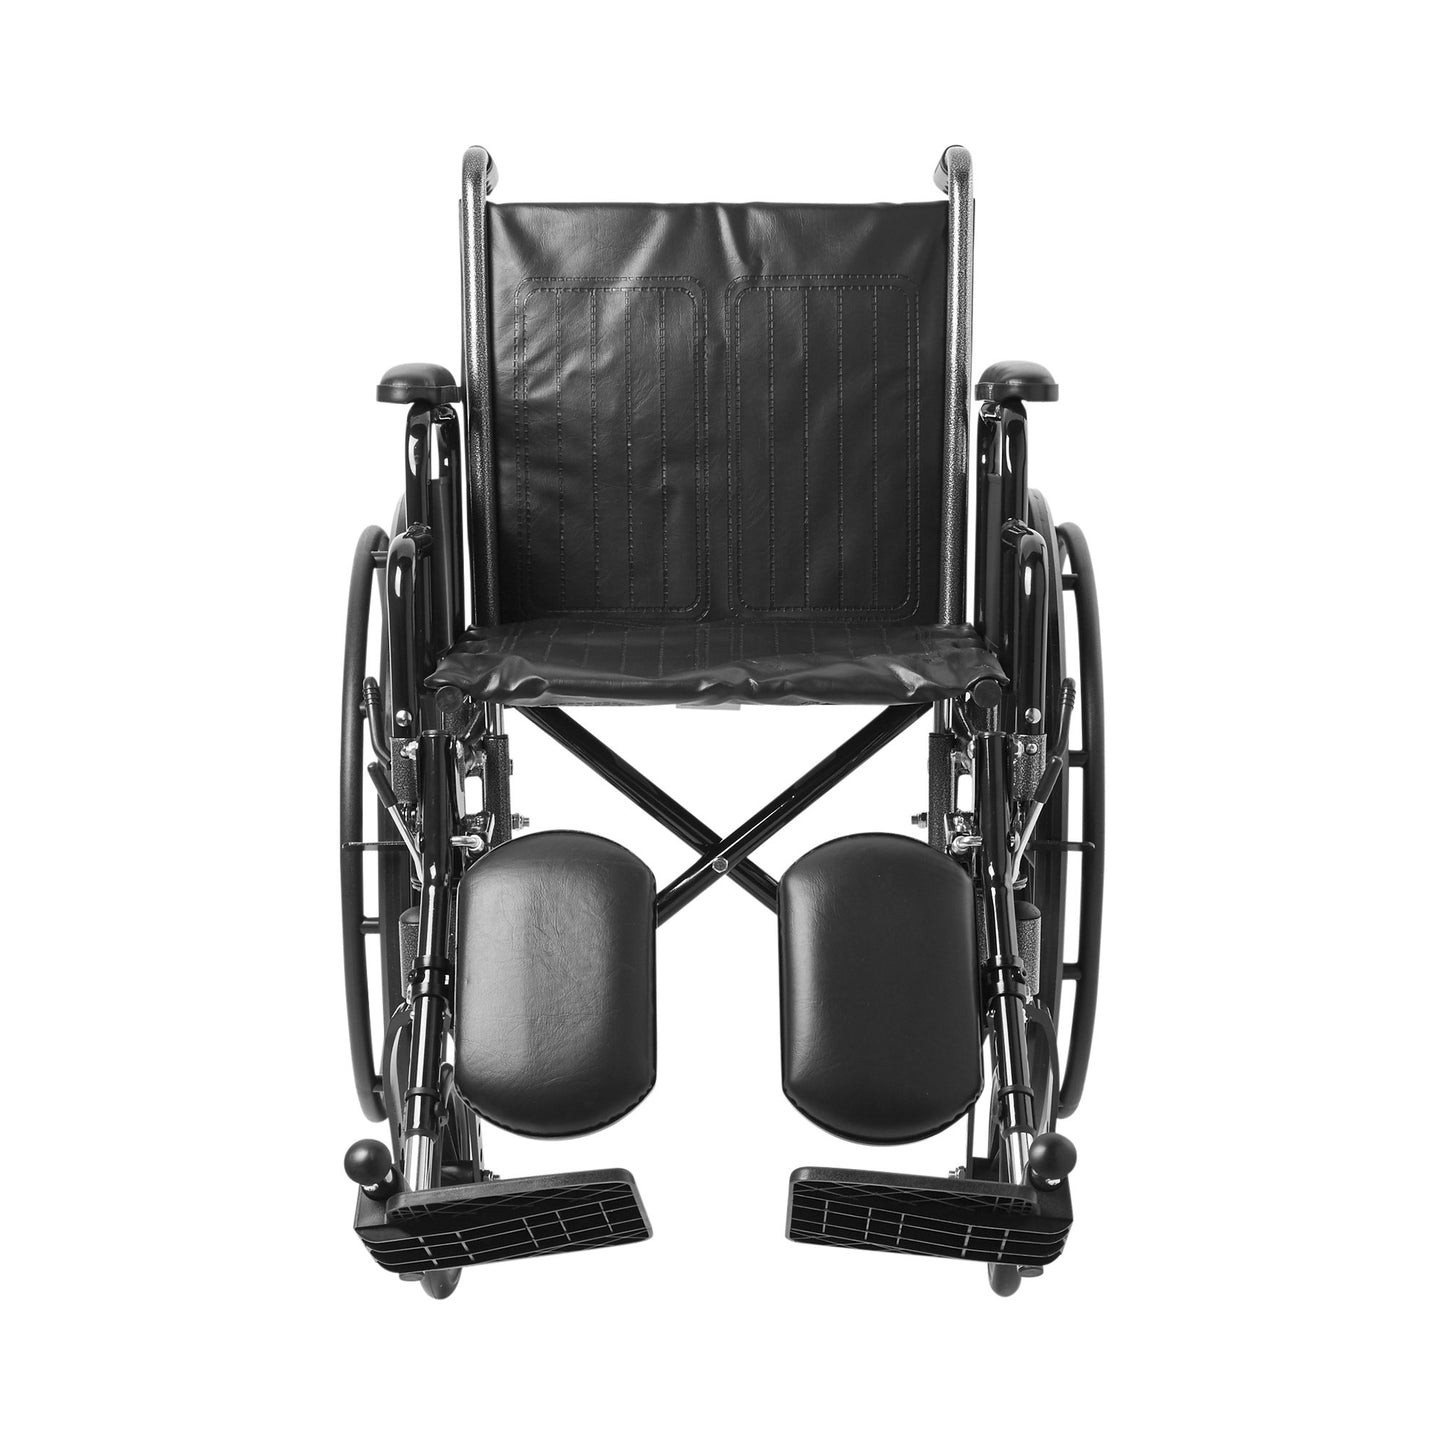 McKesson Wheelchair, 18 Inch Seat Width, Legrest